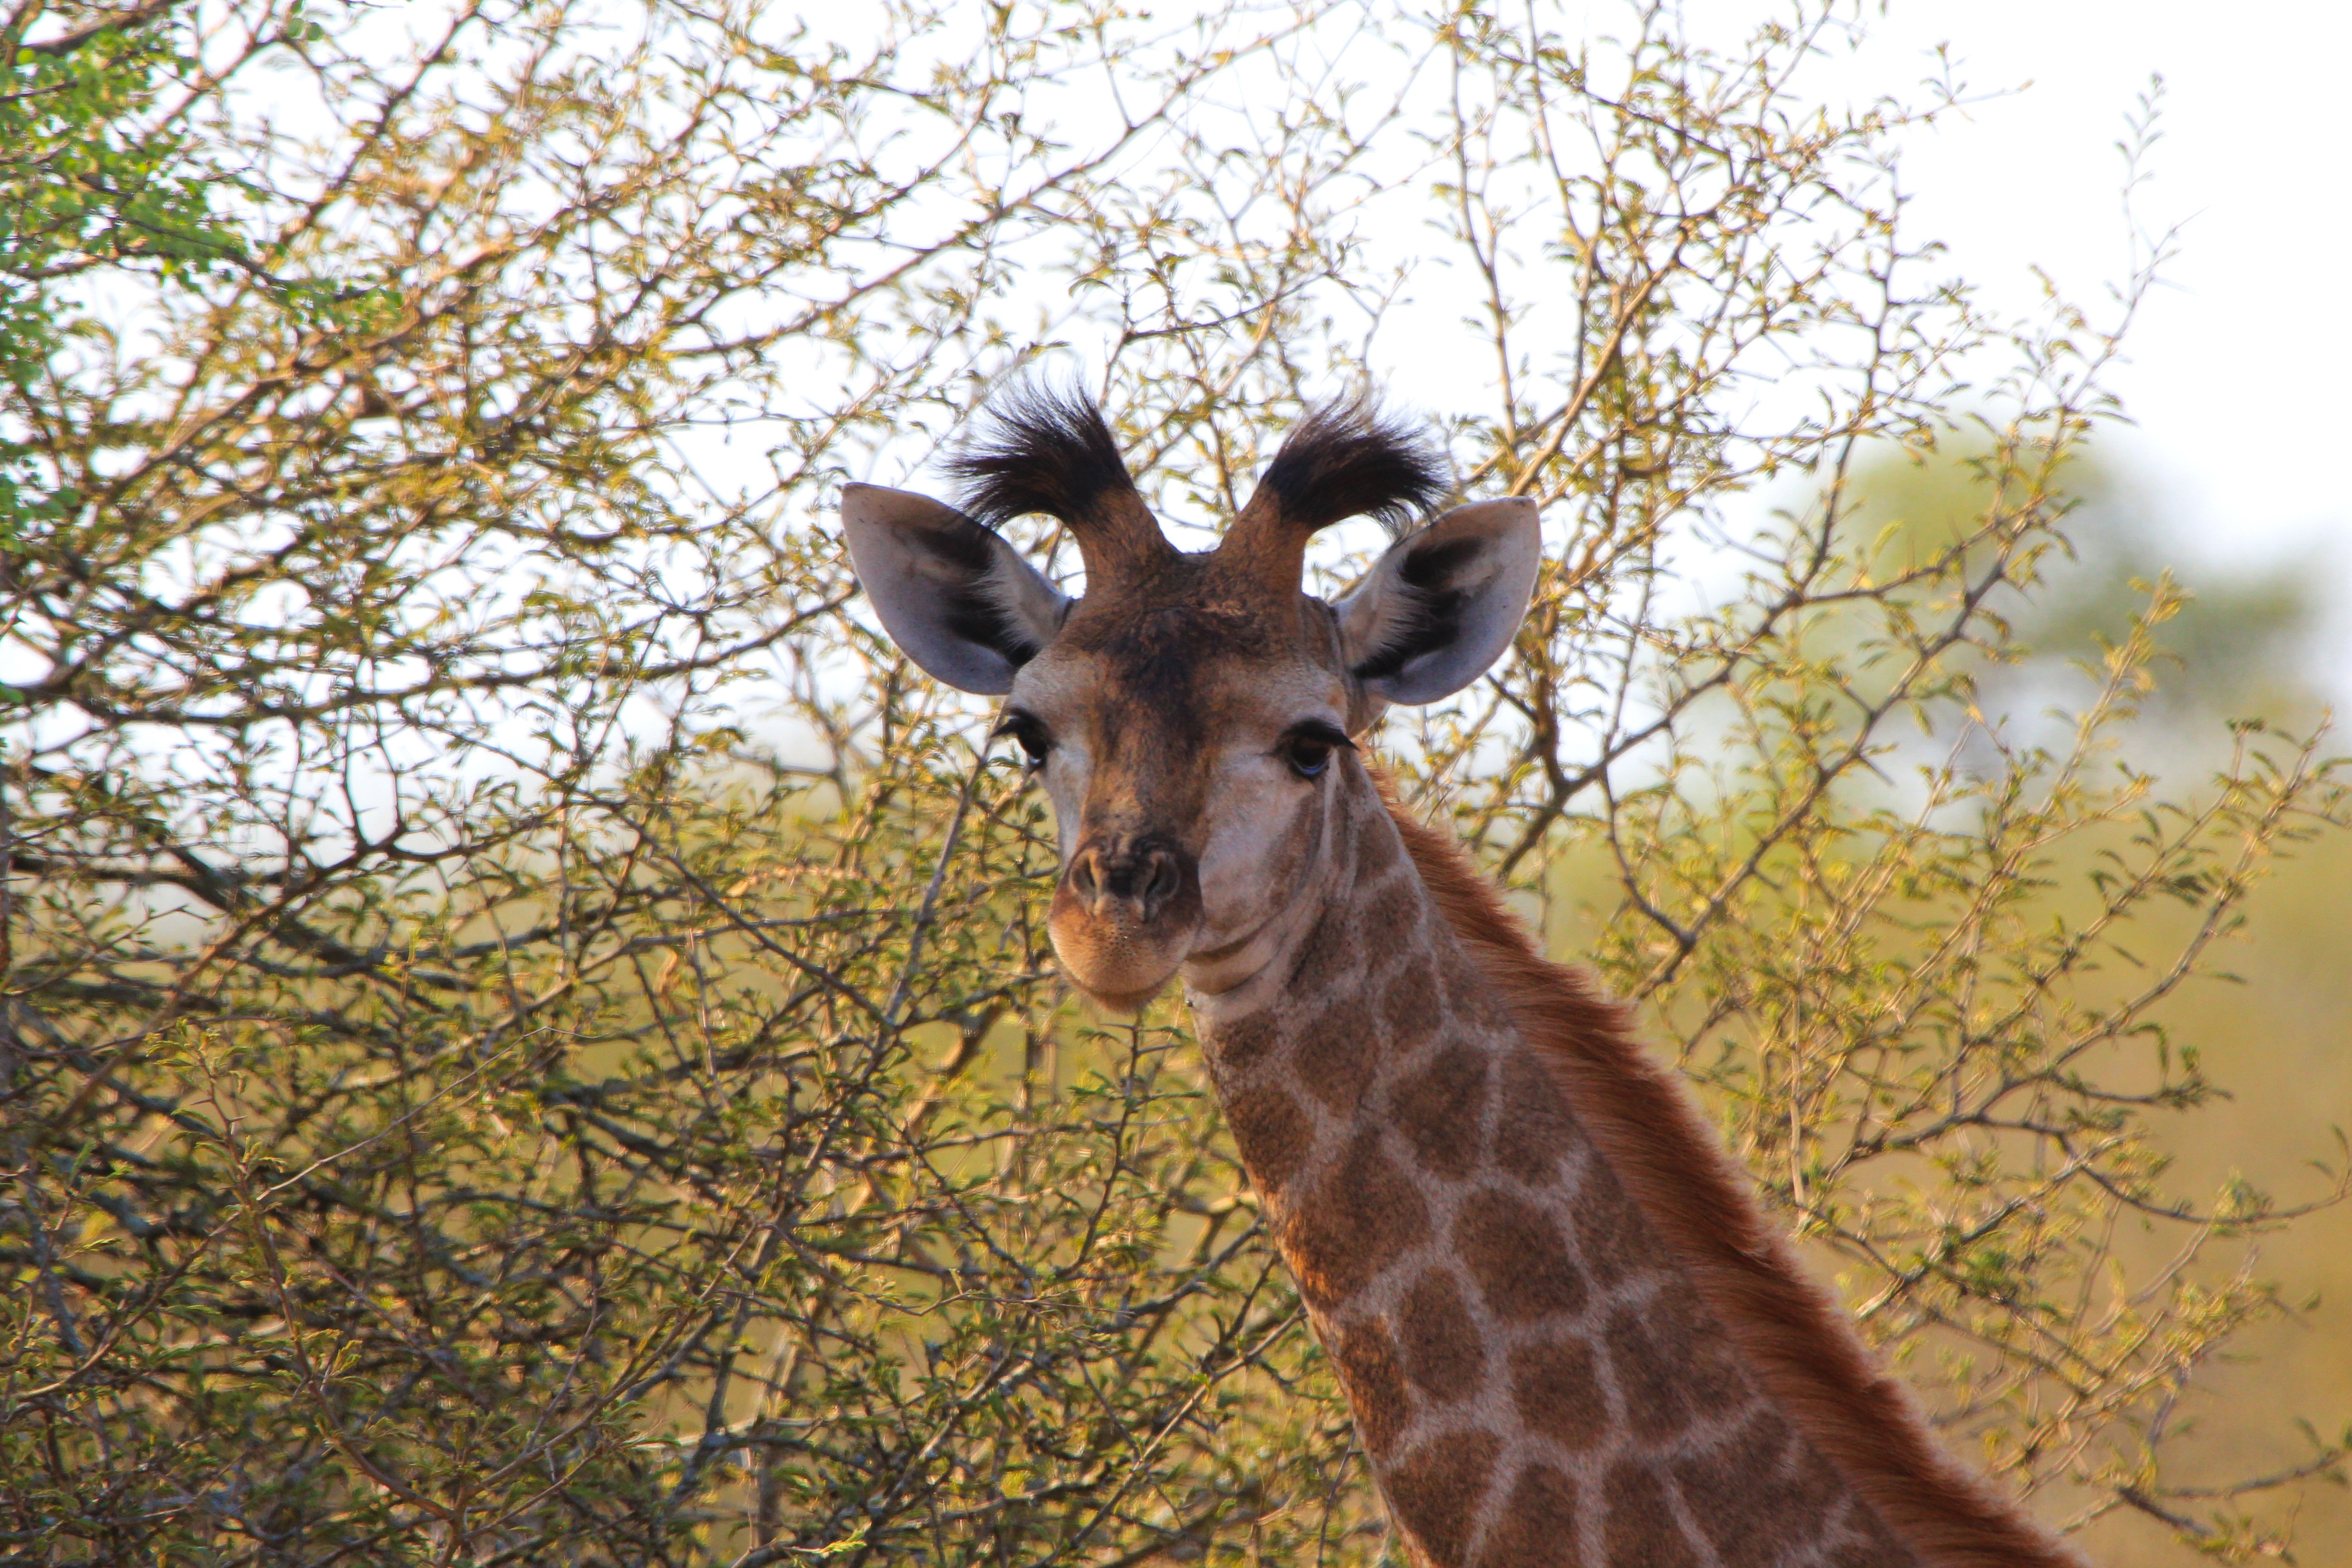 8k Giraffe Images